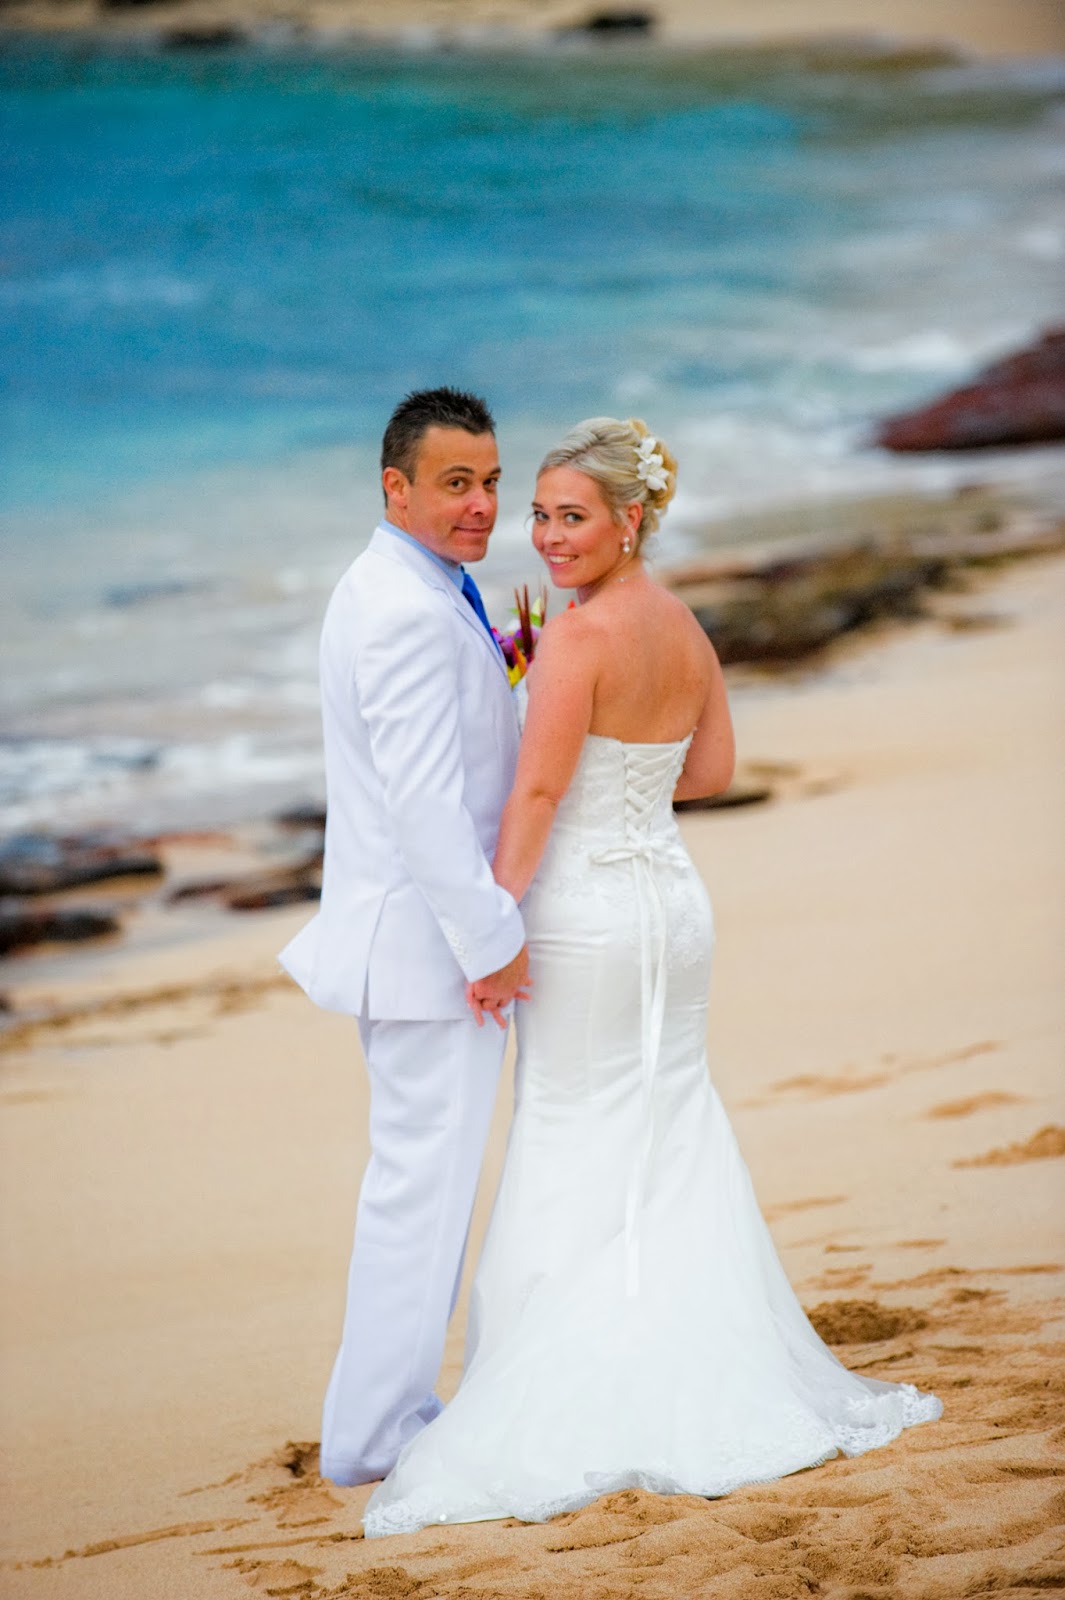 Maui wedding planners Marry Me Maui Maui Beach Weddings